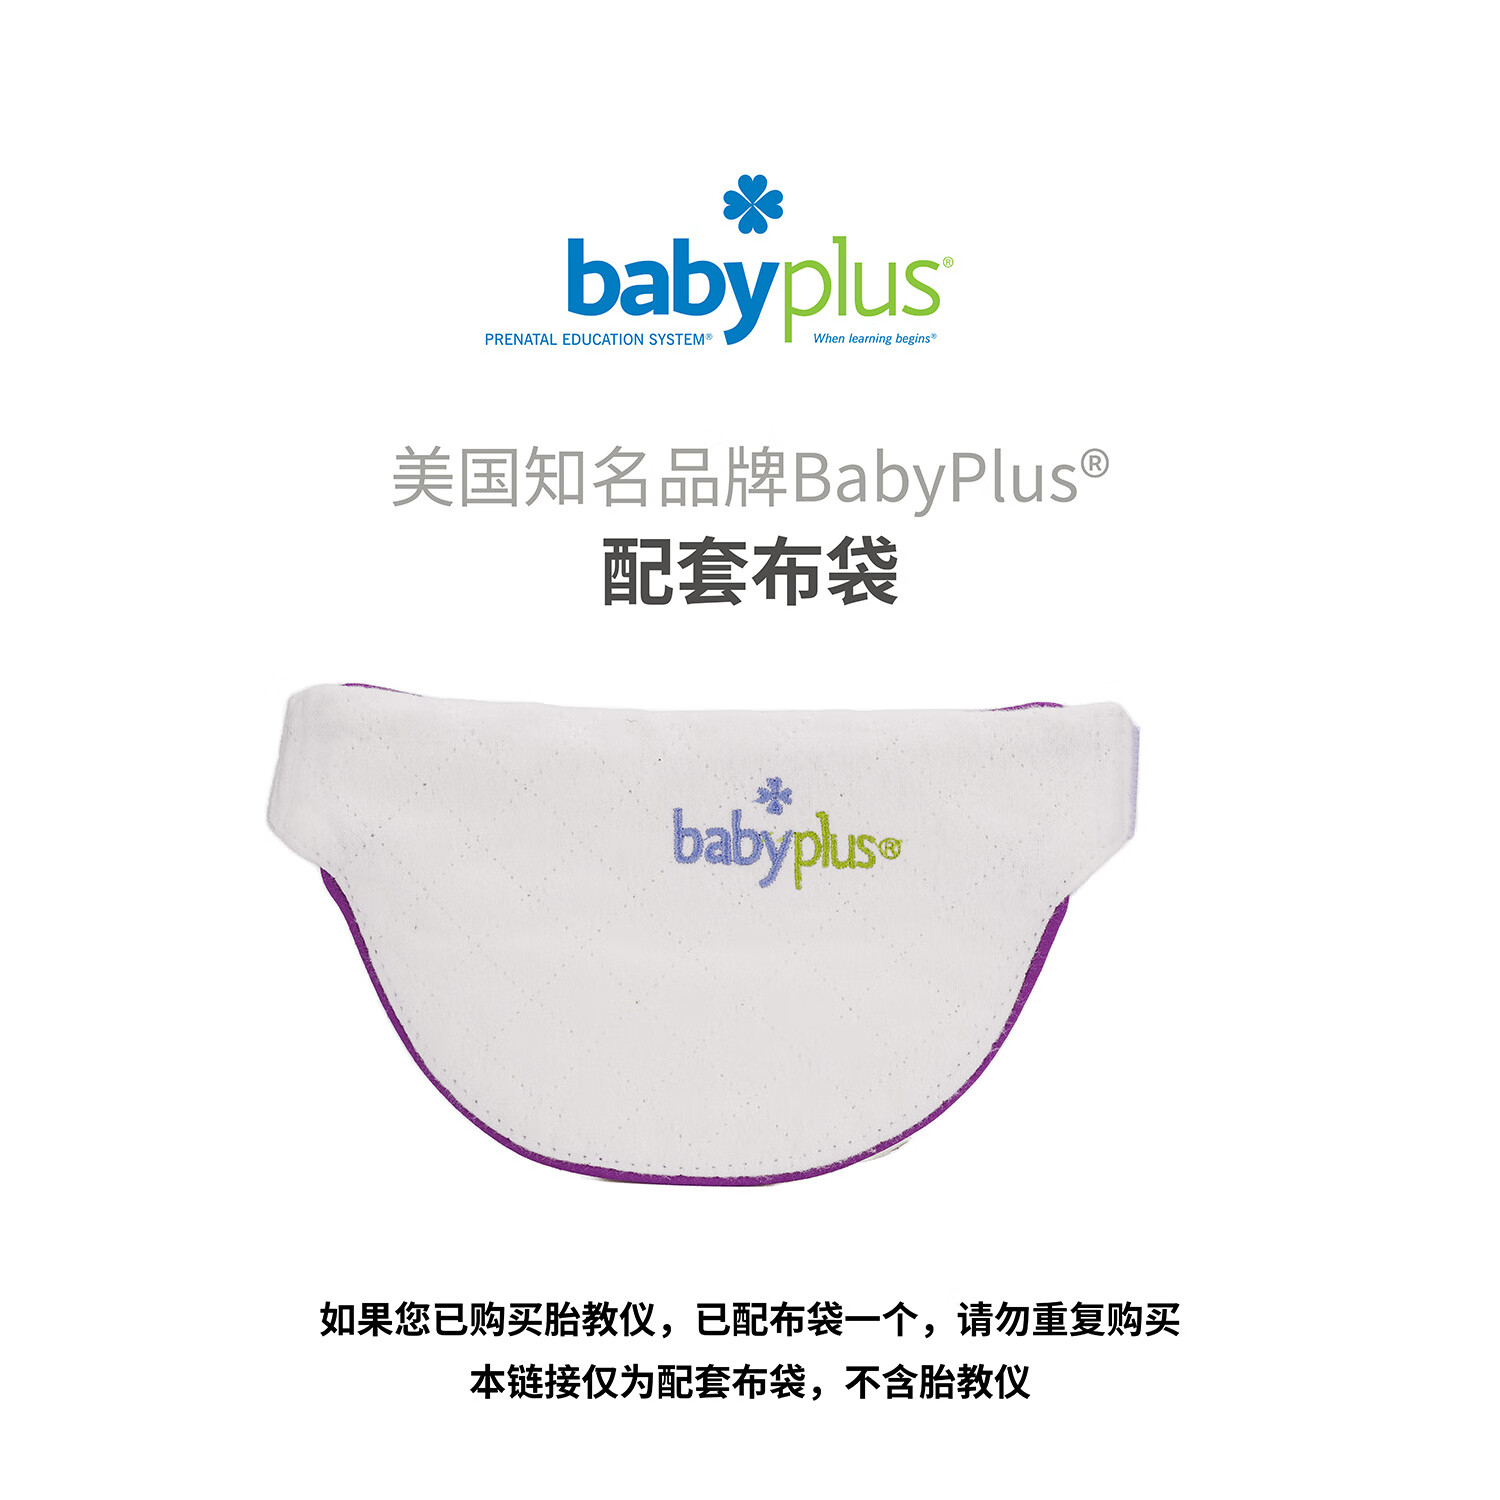 BABYPLUS配套布袋BabyPlus胎教仪美国心音音乐孕妇待产怀孕待产 配套布袋（不含胎教仪）